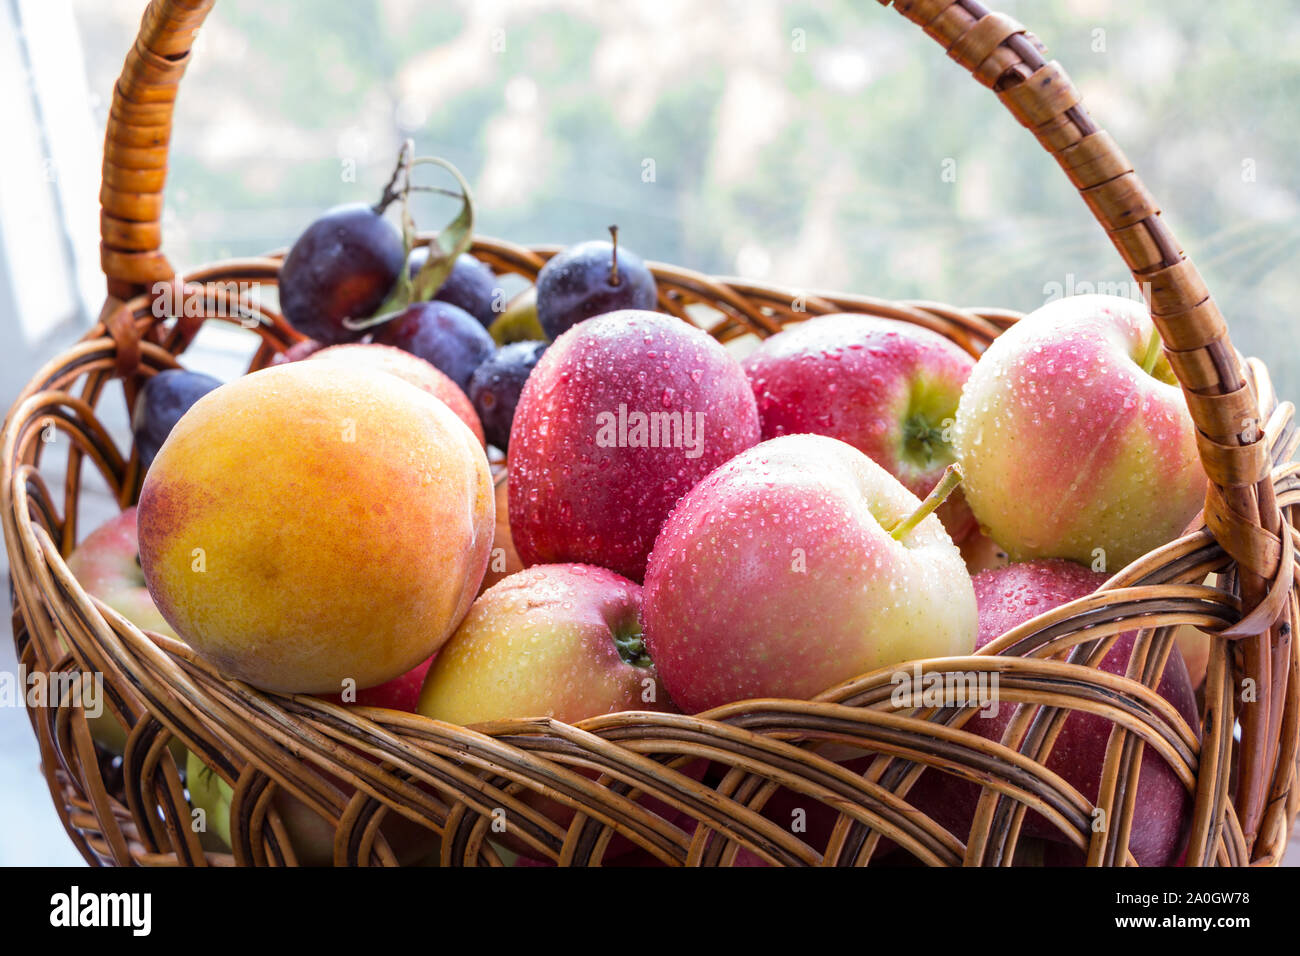 Panier en osier avec fruits lavés à partir de la nouvelle récolte en elle. Pommes rouges bien mûrs, de pêche et de prune, de gouttelettes d'eau sur eux. Banque D'Images